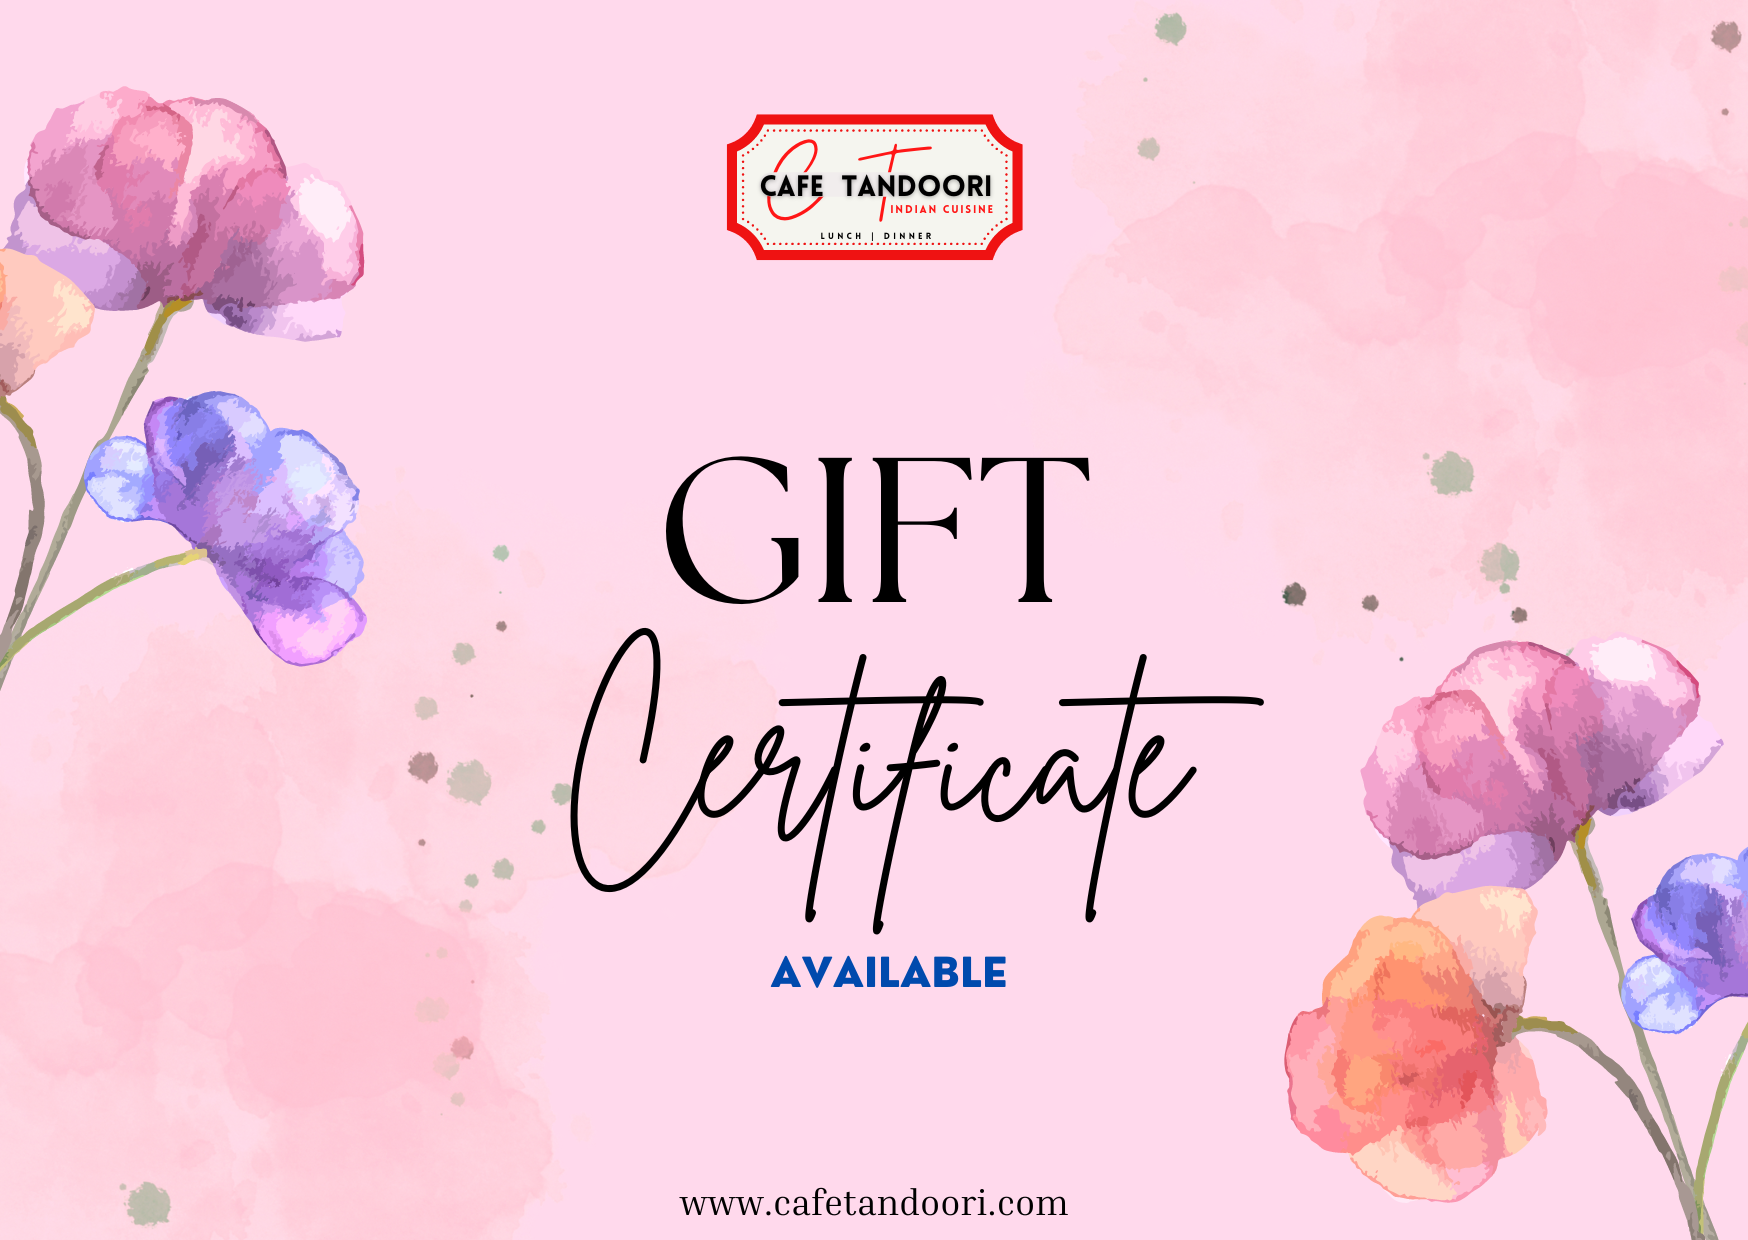 Cafe-Tandoori-Gift-Certificate